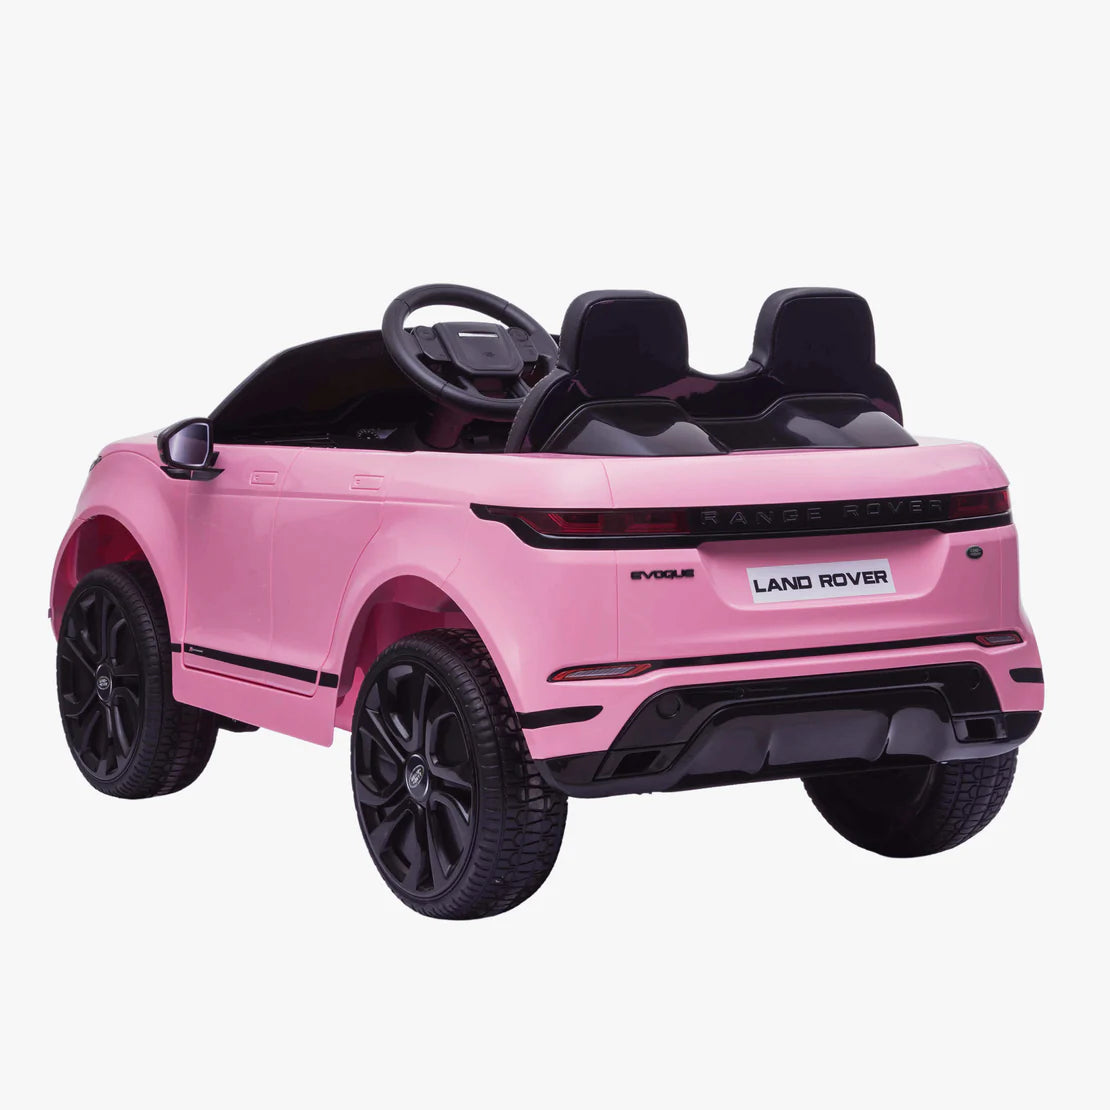 Range Rover evoque kids 12v car - Pink